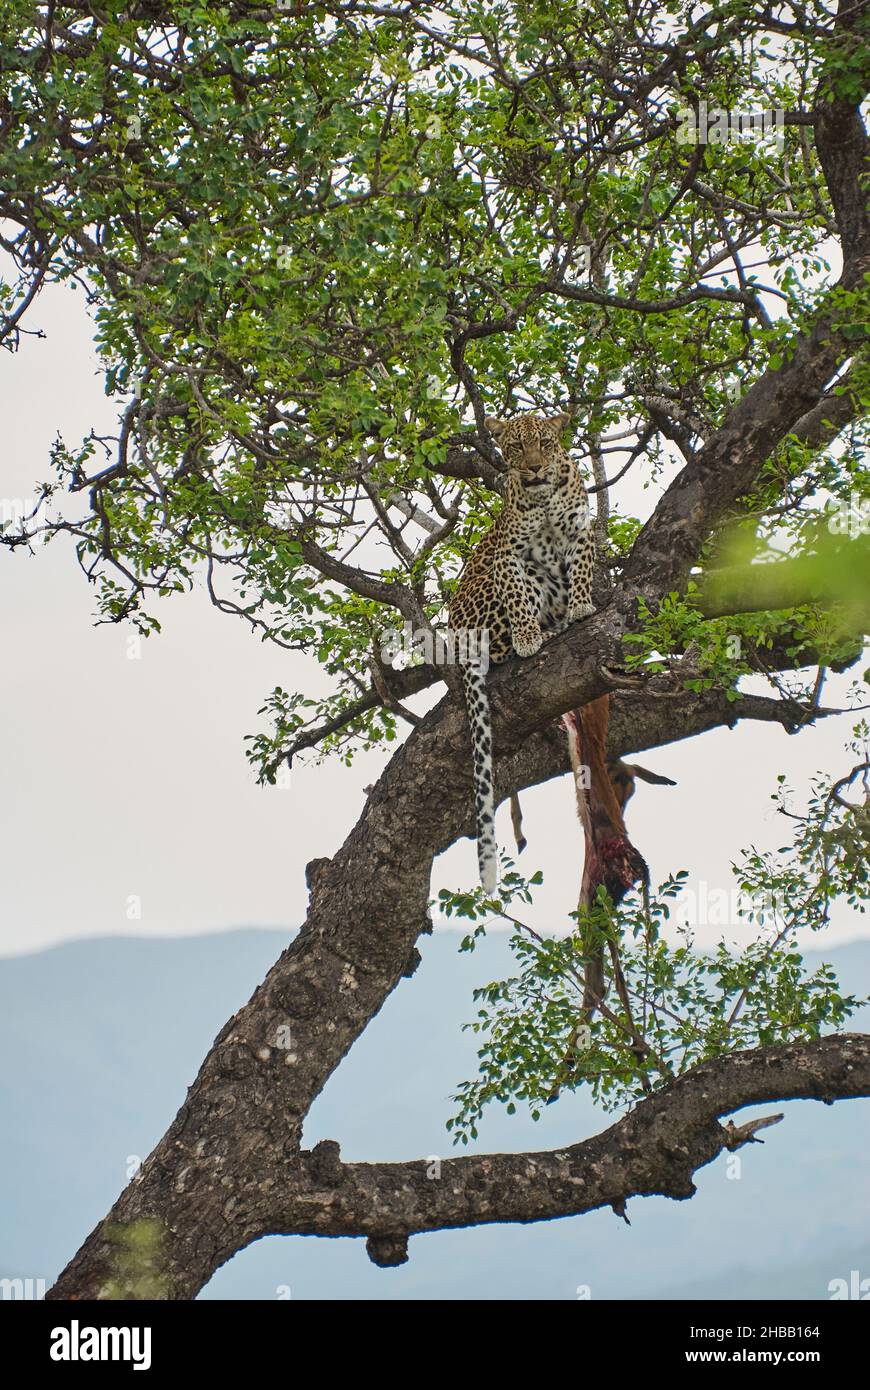 leopardo, Panthera pardus, un grande predatore e gatto selvatico africano seduto in alto in un albero con un Impala morto come sua preda Foto Stock